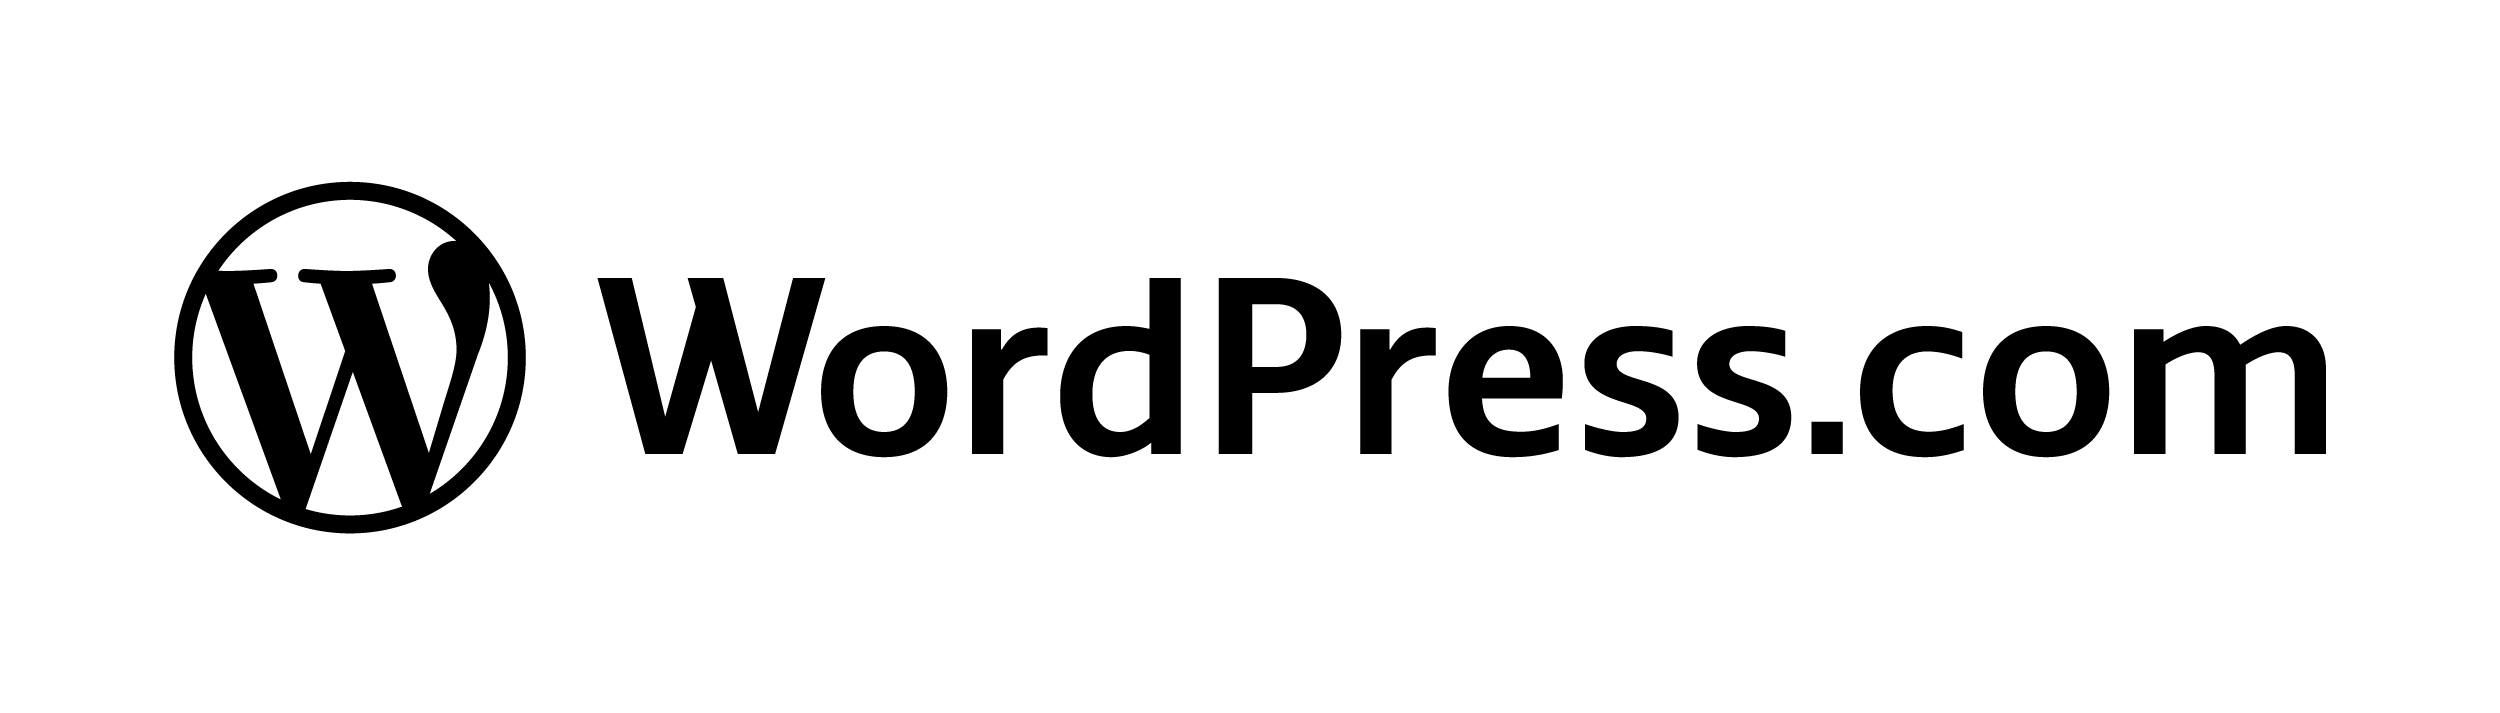 wordpress dot com logo